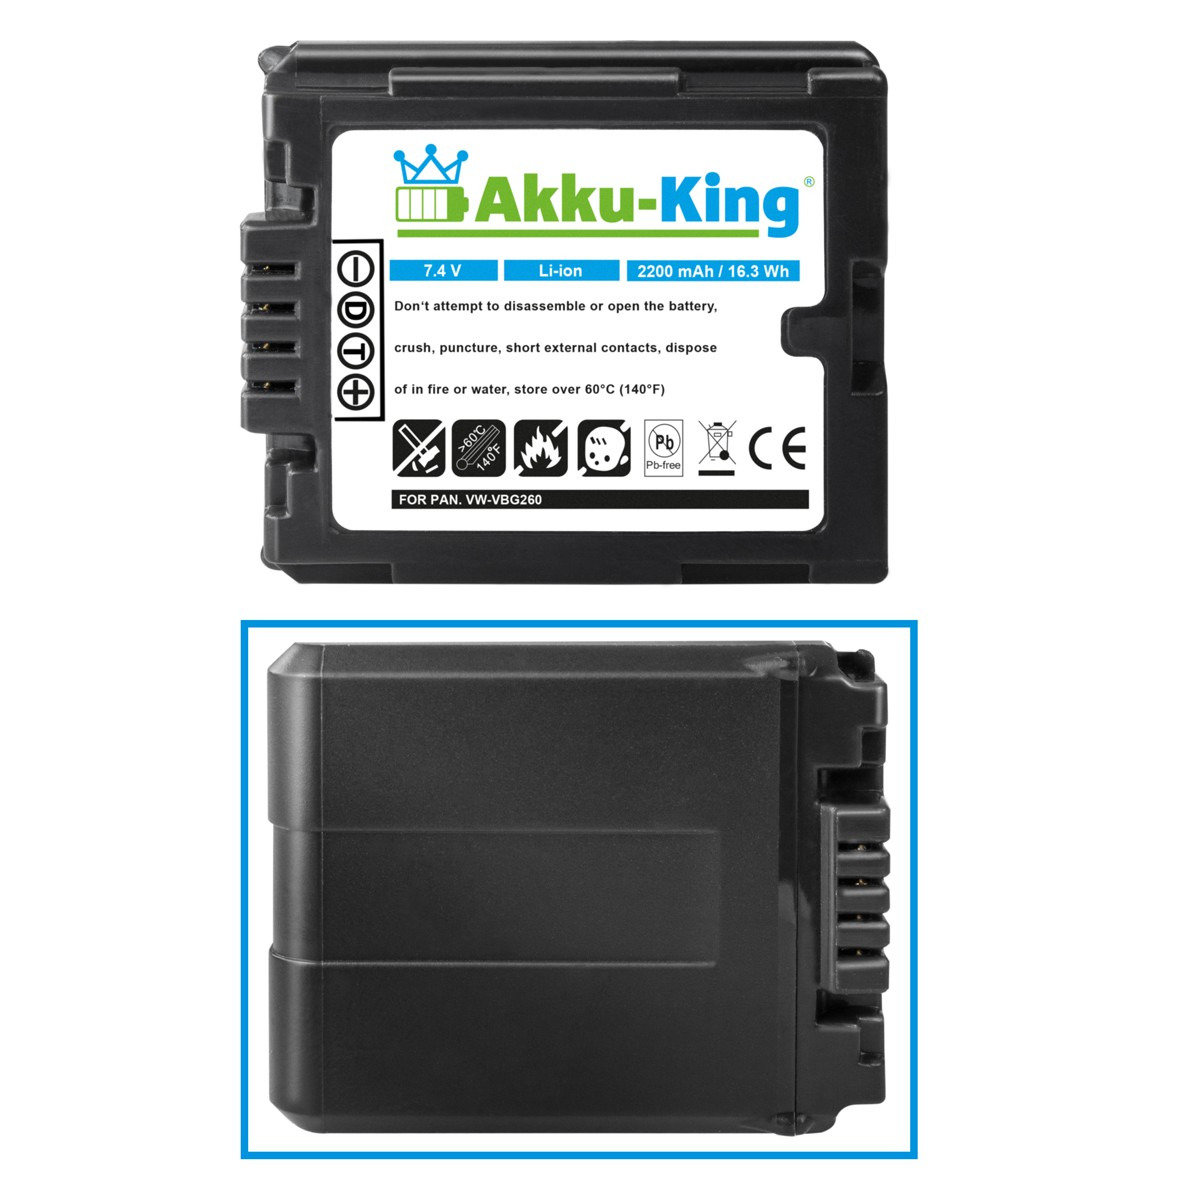 AKKU-KING Akku Panasonic Li-Ion kompatibel 2200mAh Kamera-Akku, VW-VBG260 mit Volt, 7.4